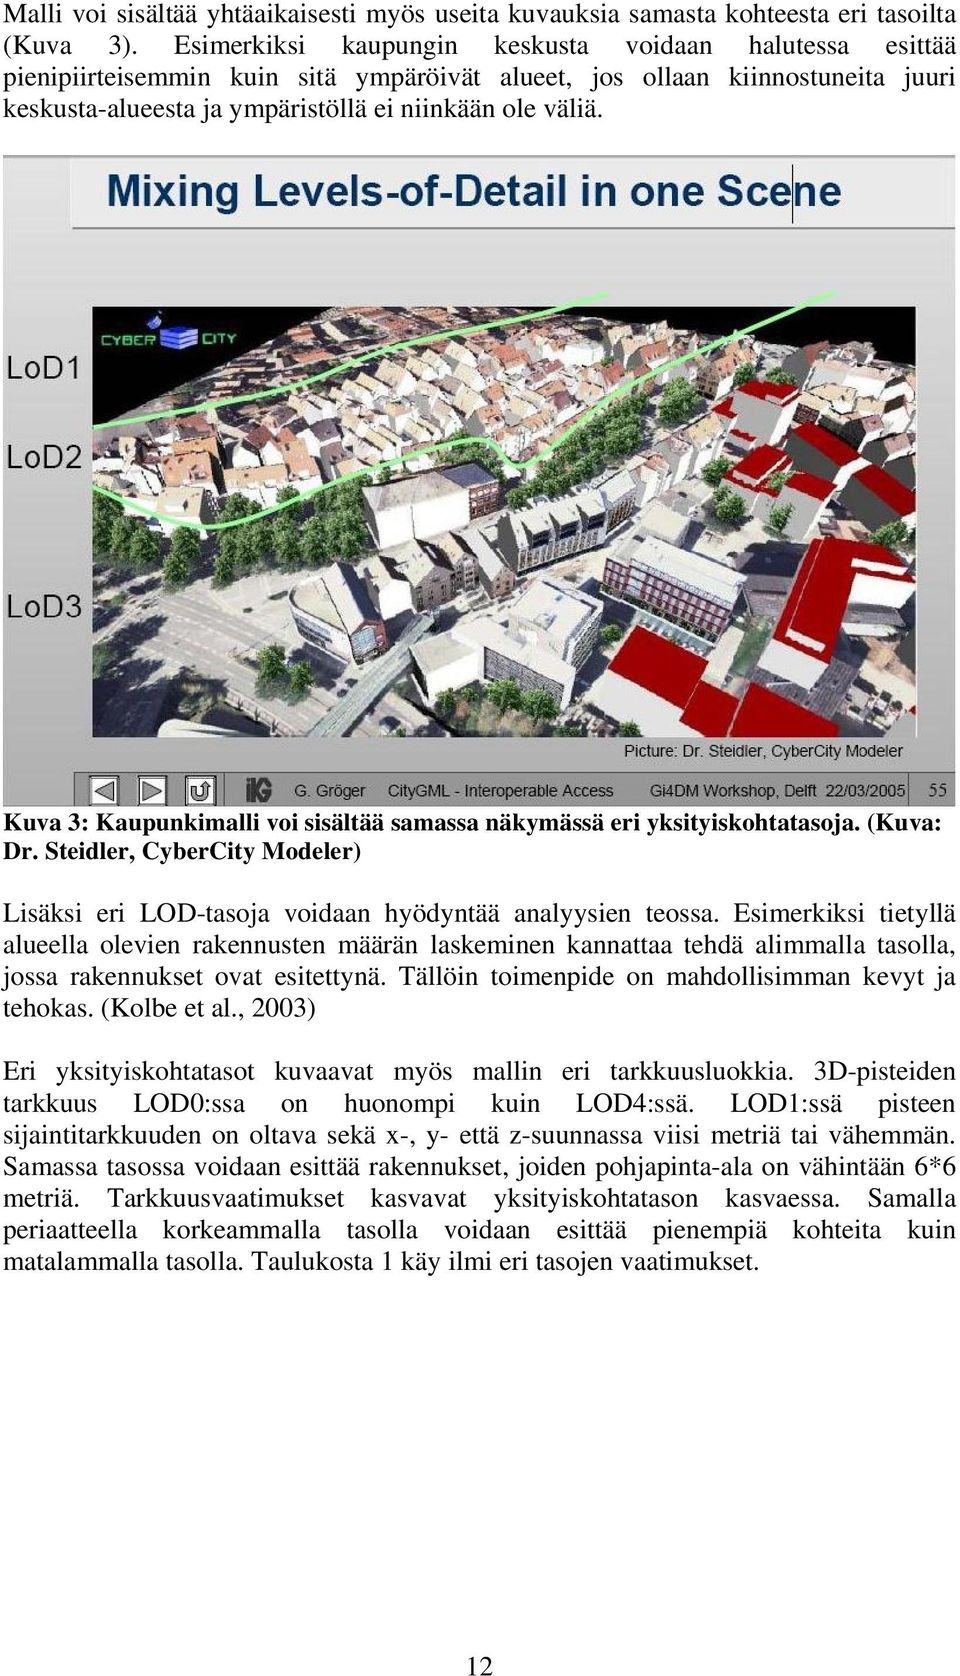 Kuva 3: Kaupunkimalli voi sisältää samassa näkymässä eri yksityiskohtatasoja. (Kuva: Dr. Steidler, CyberCity Modeler) Lisäksi eri LOD-tasoja voidaan hyödyntää analyysien teossa.